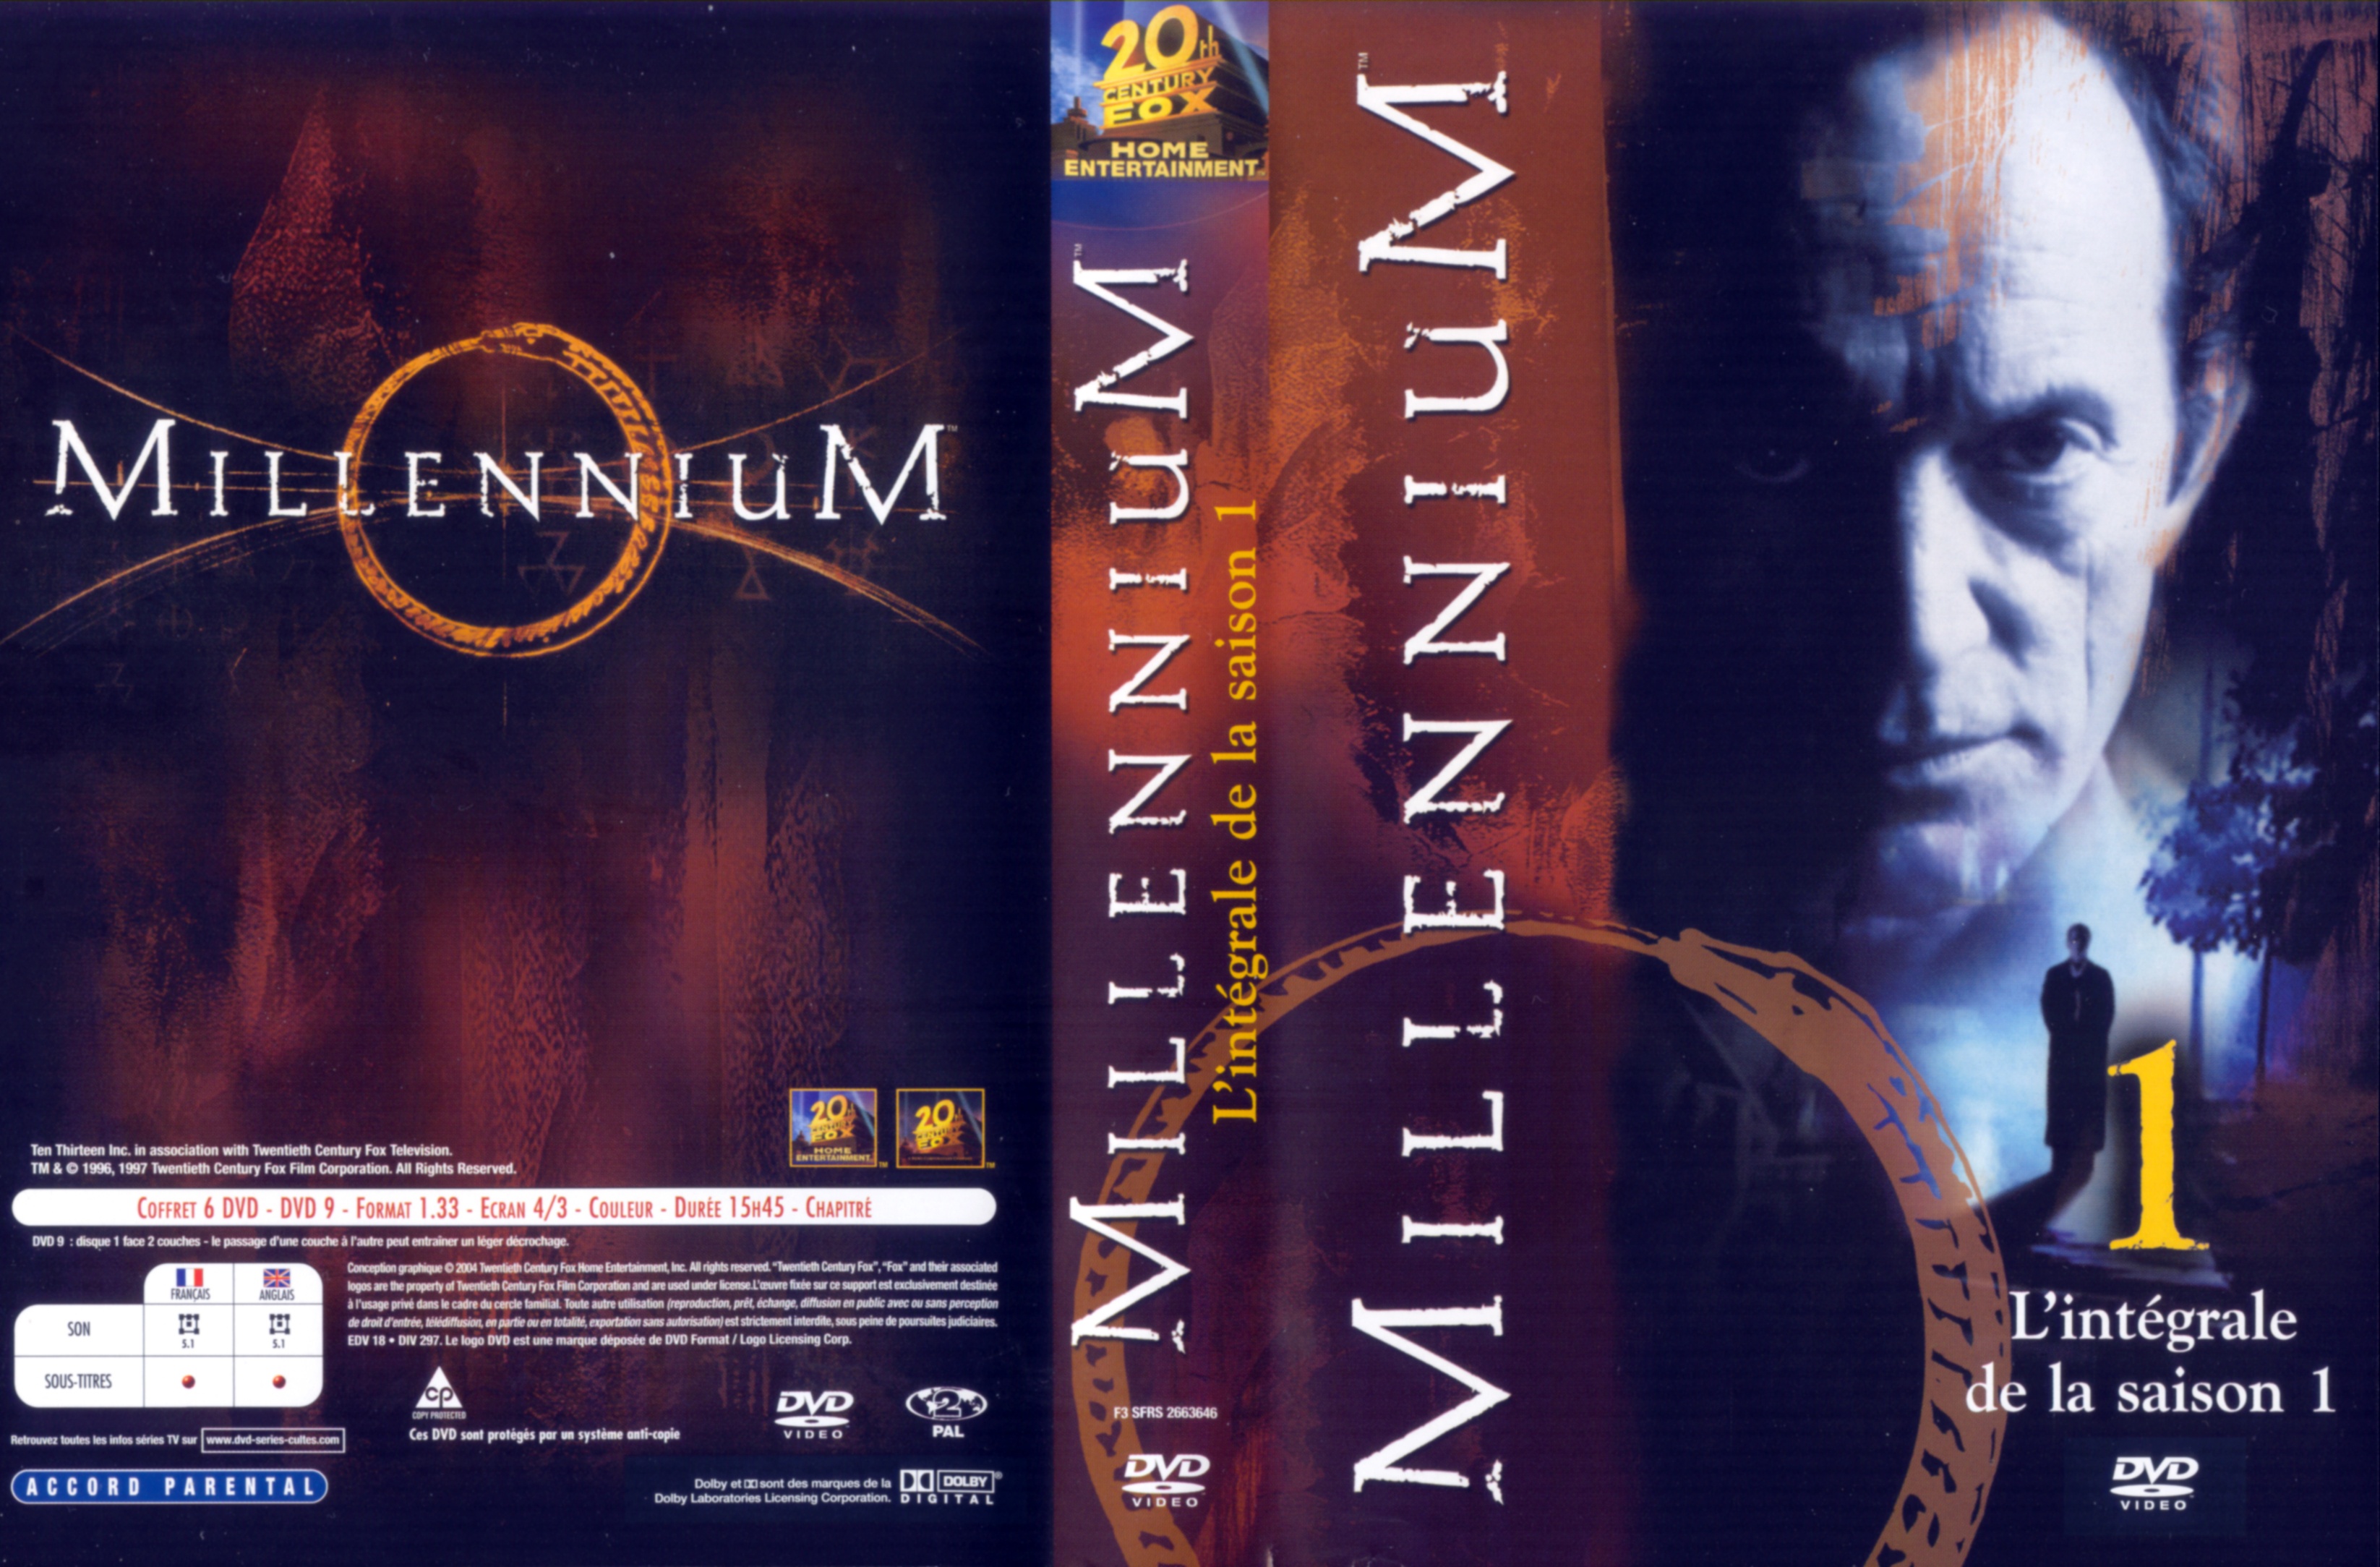 Jaquette DVD Millennium saison 1 COFFRET